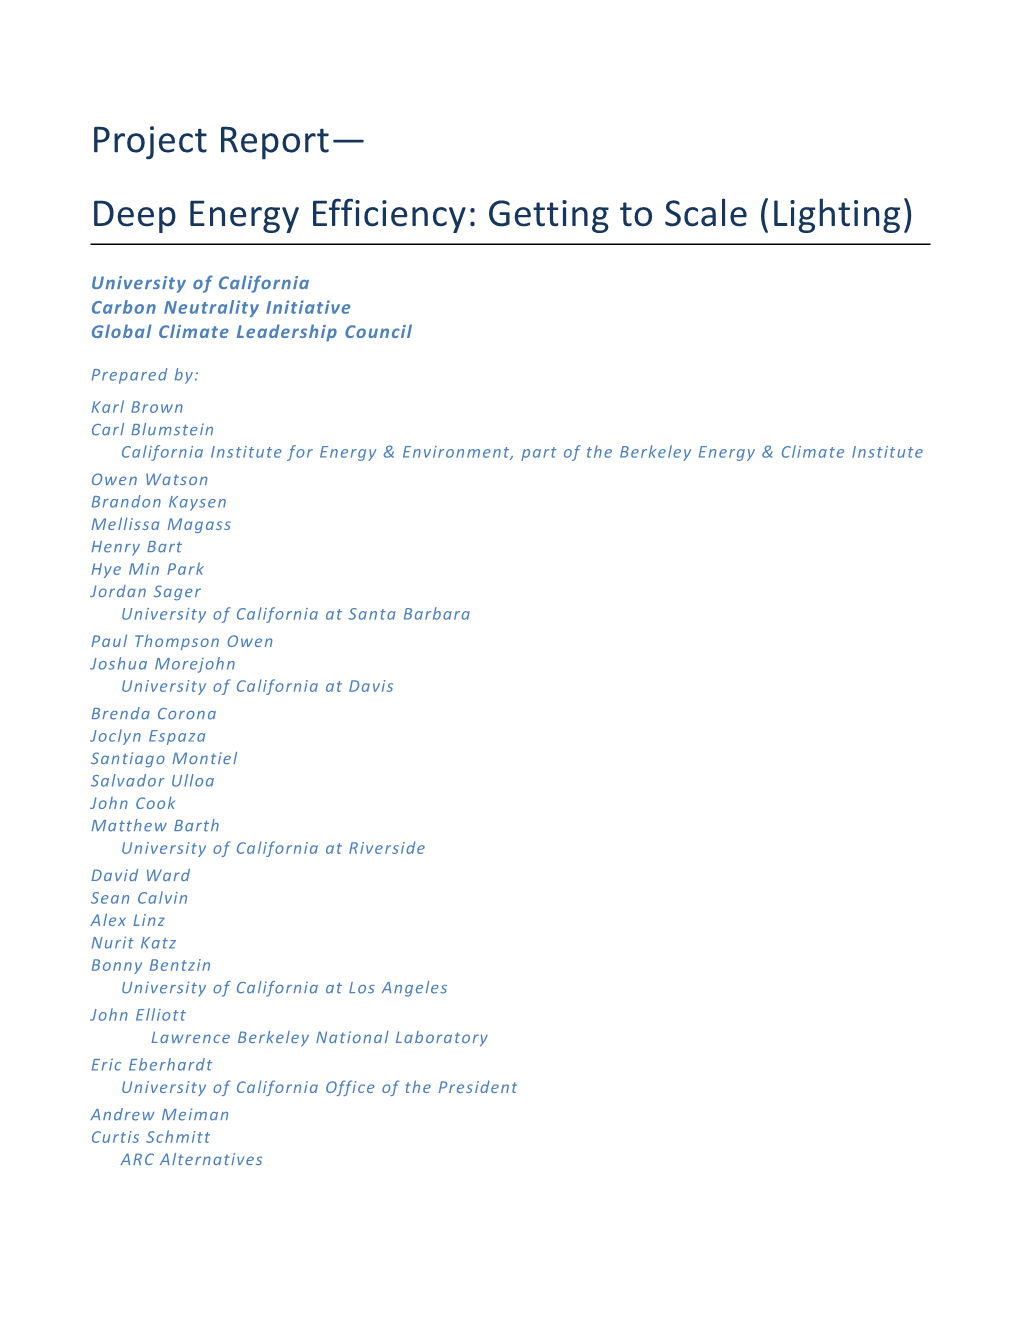 Deep Energy Efficiency: Getting to Scale (Lighting)